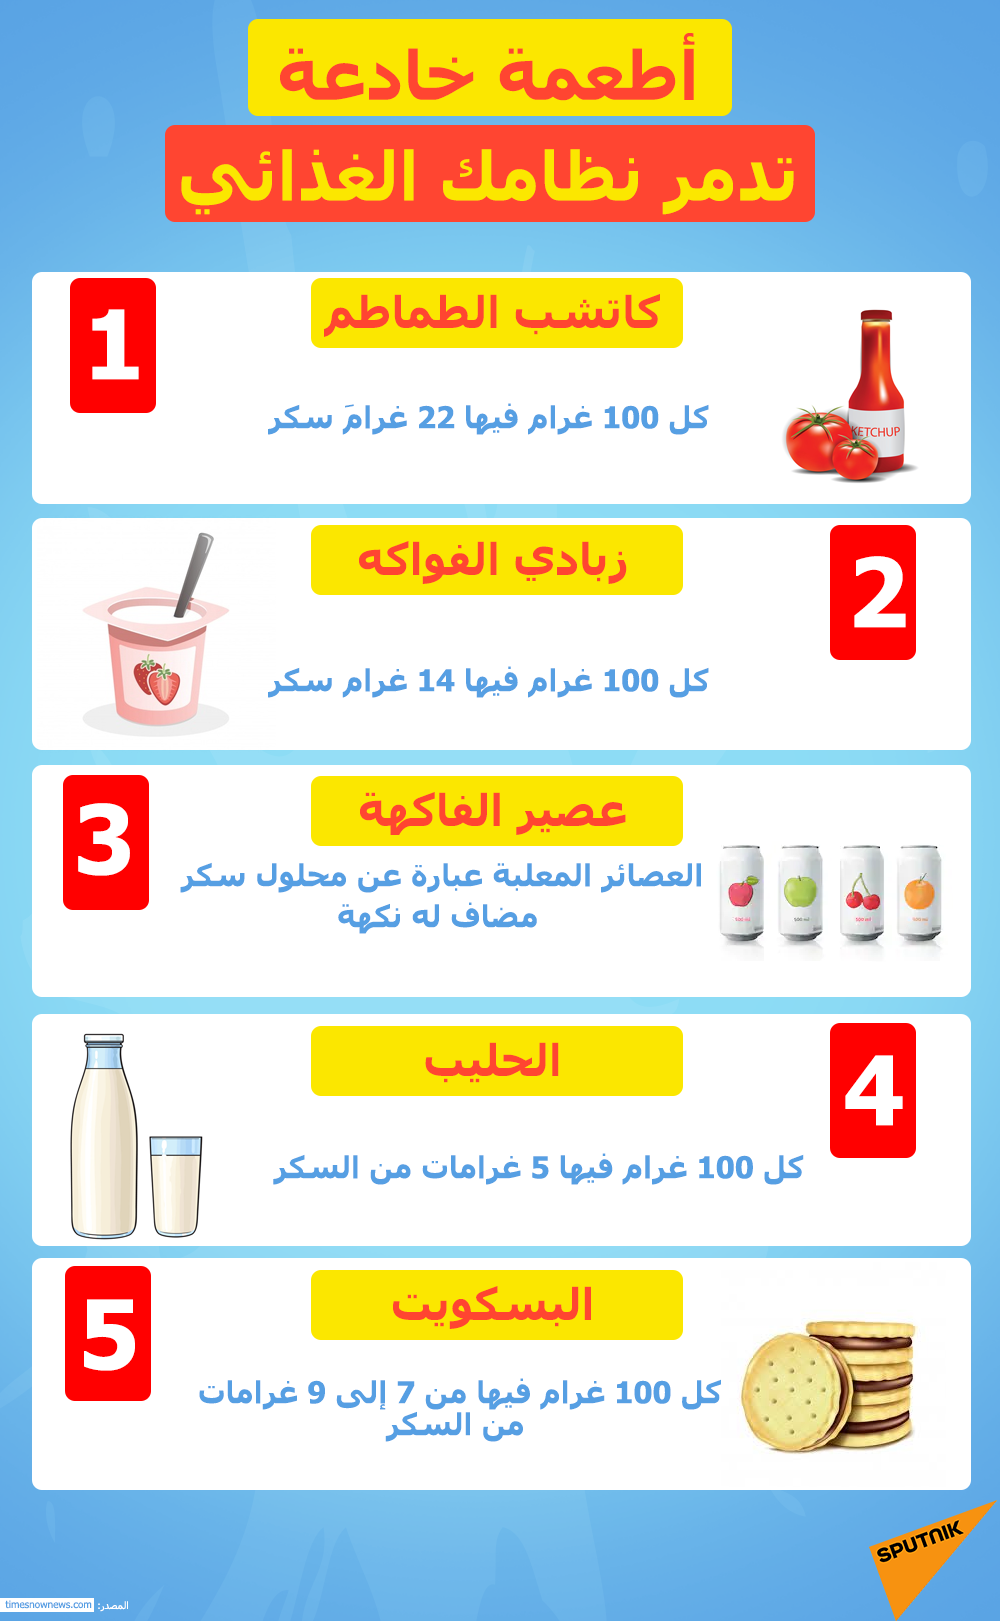 5 أطعمة خادعة يمكنها تدمير نظامك الغذائي بالكامل - سبوتنيك عربي